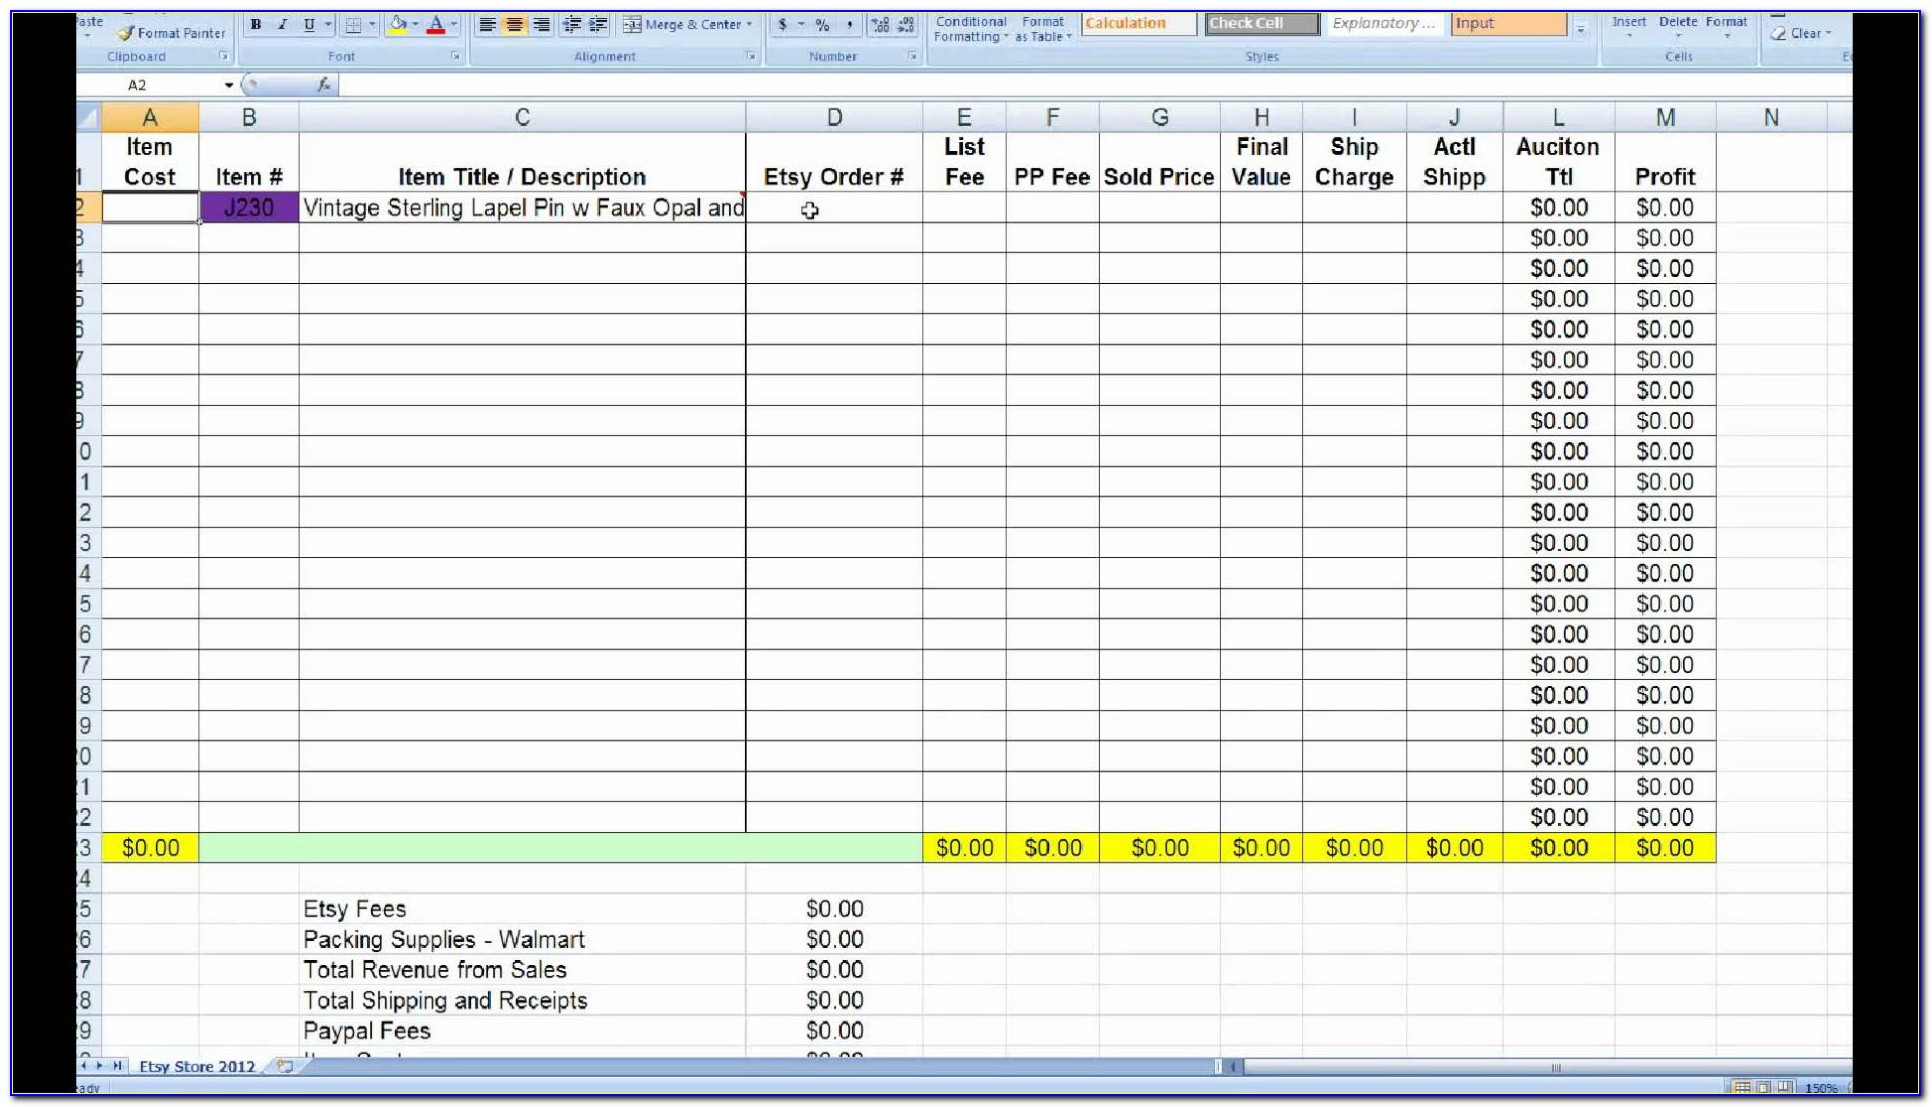 Gantt Chart Excel Template Free Xls